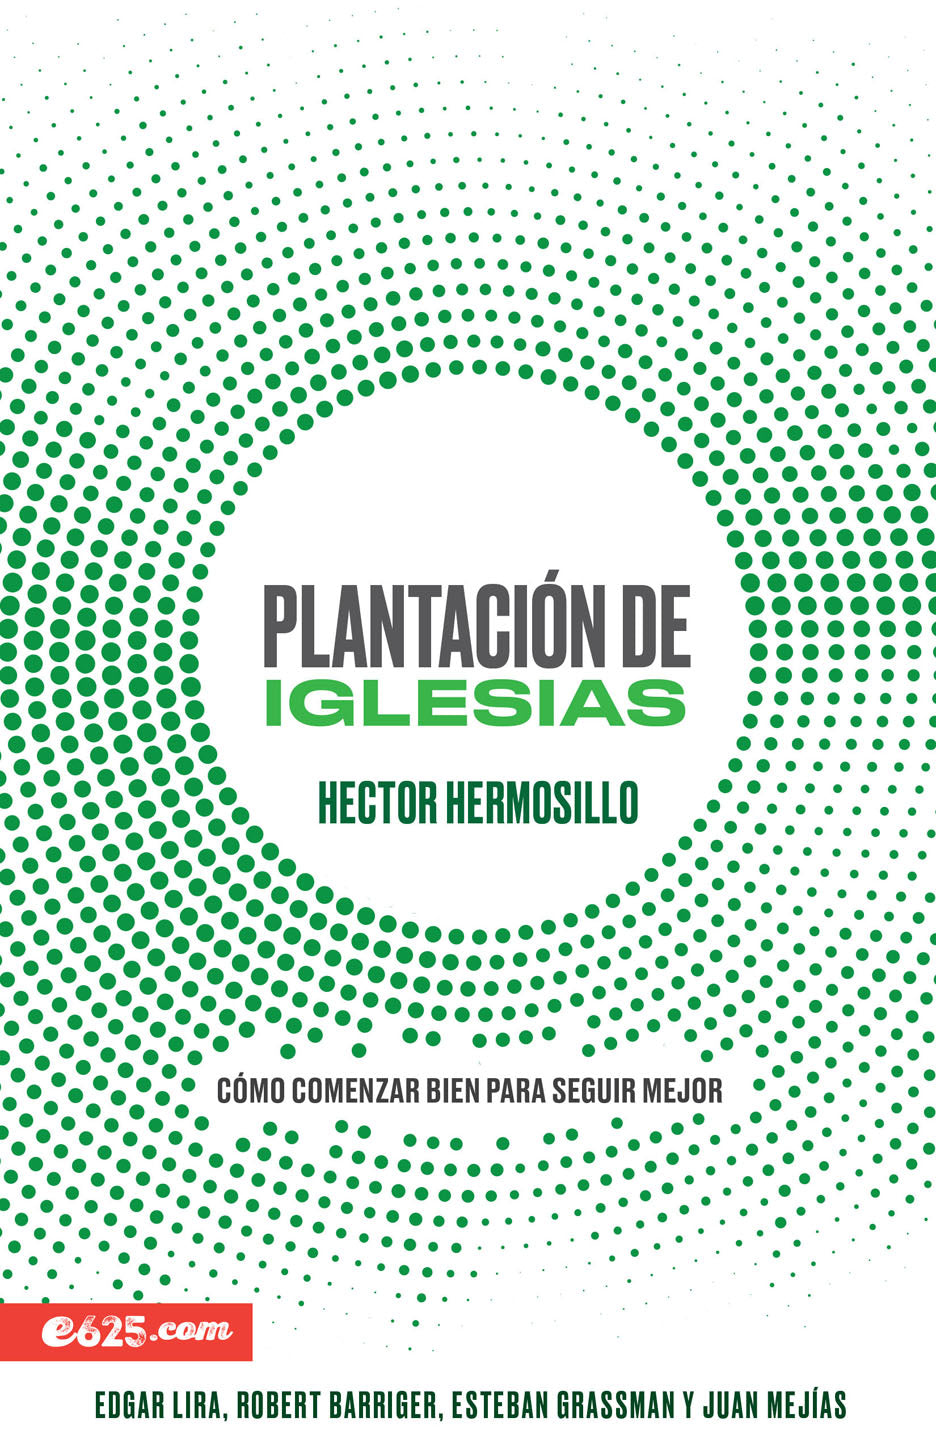 Plantación de iglesias - Hector Hermosillo